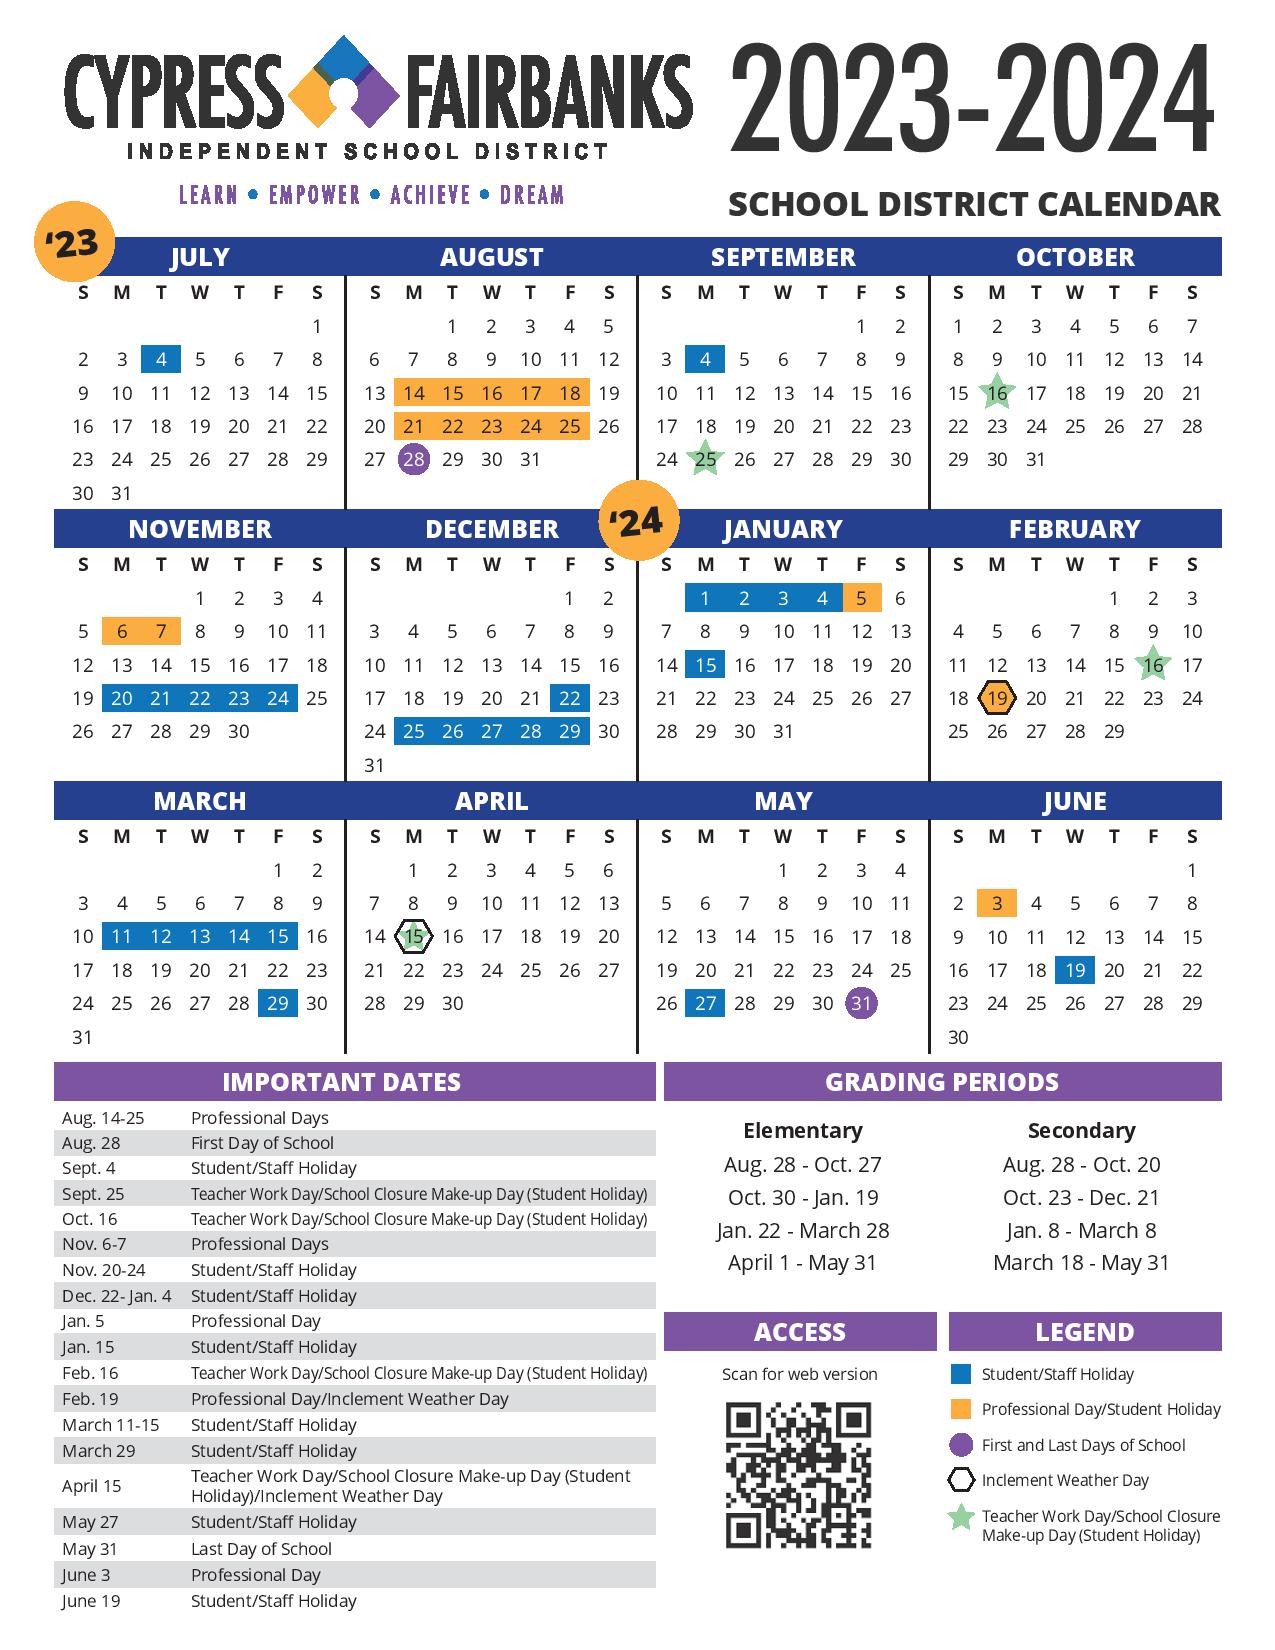 CypressFairbanks Independent School District Calendar 2024